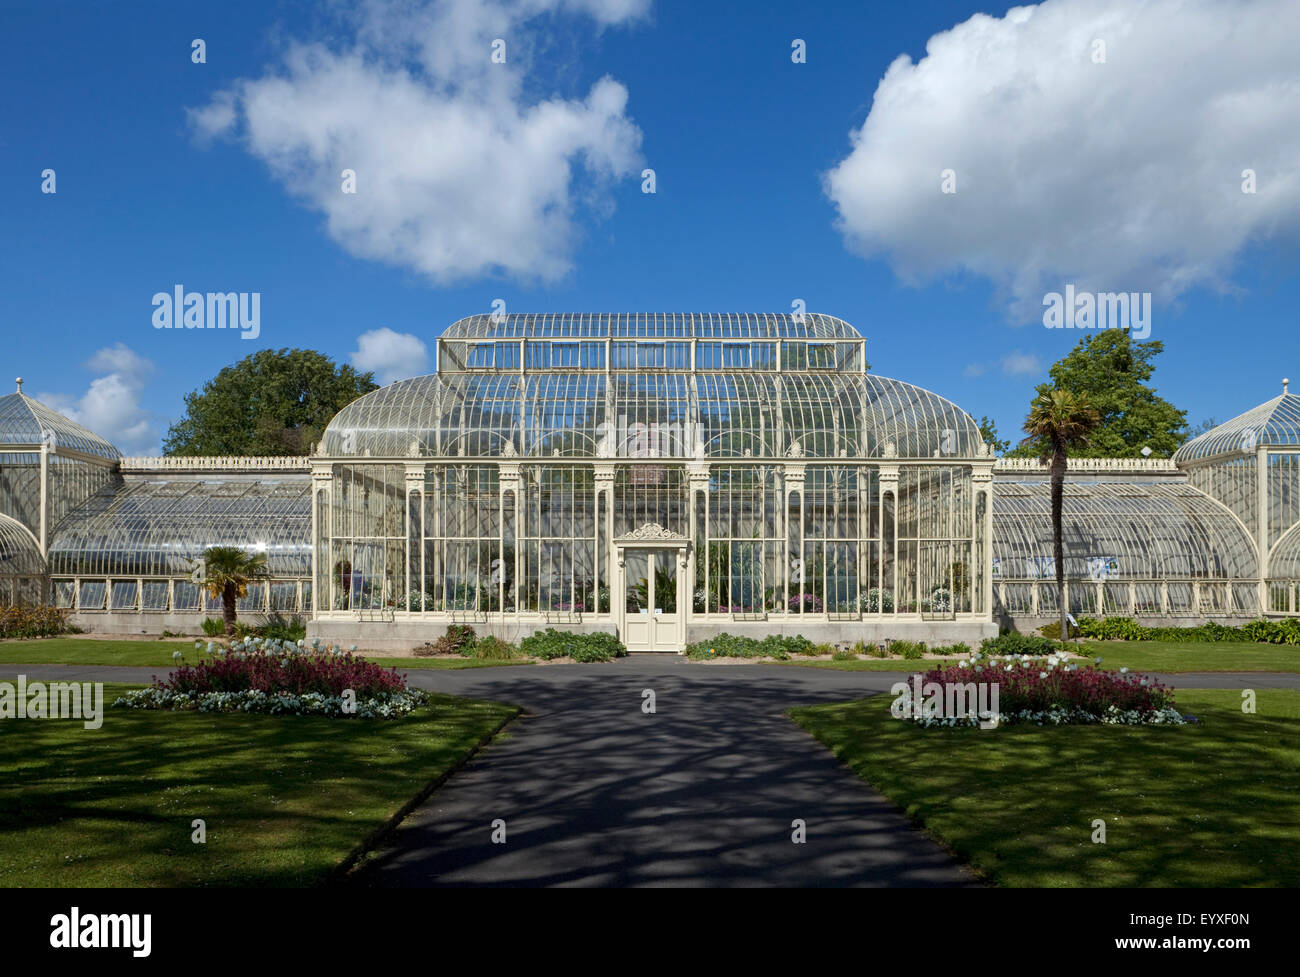 Krummlinigen Gewächshaus errichtet 1843-69, von Richard Turner, renoviert im Jahre 2004, National Botanic Gardens, Glasnevin, Stadt Dublin, Irland Stockfoto